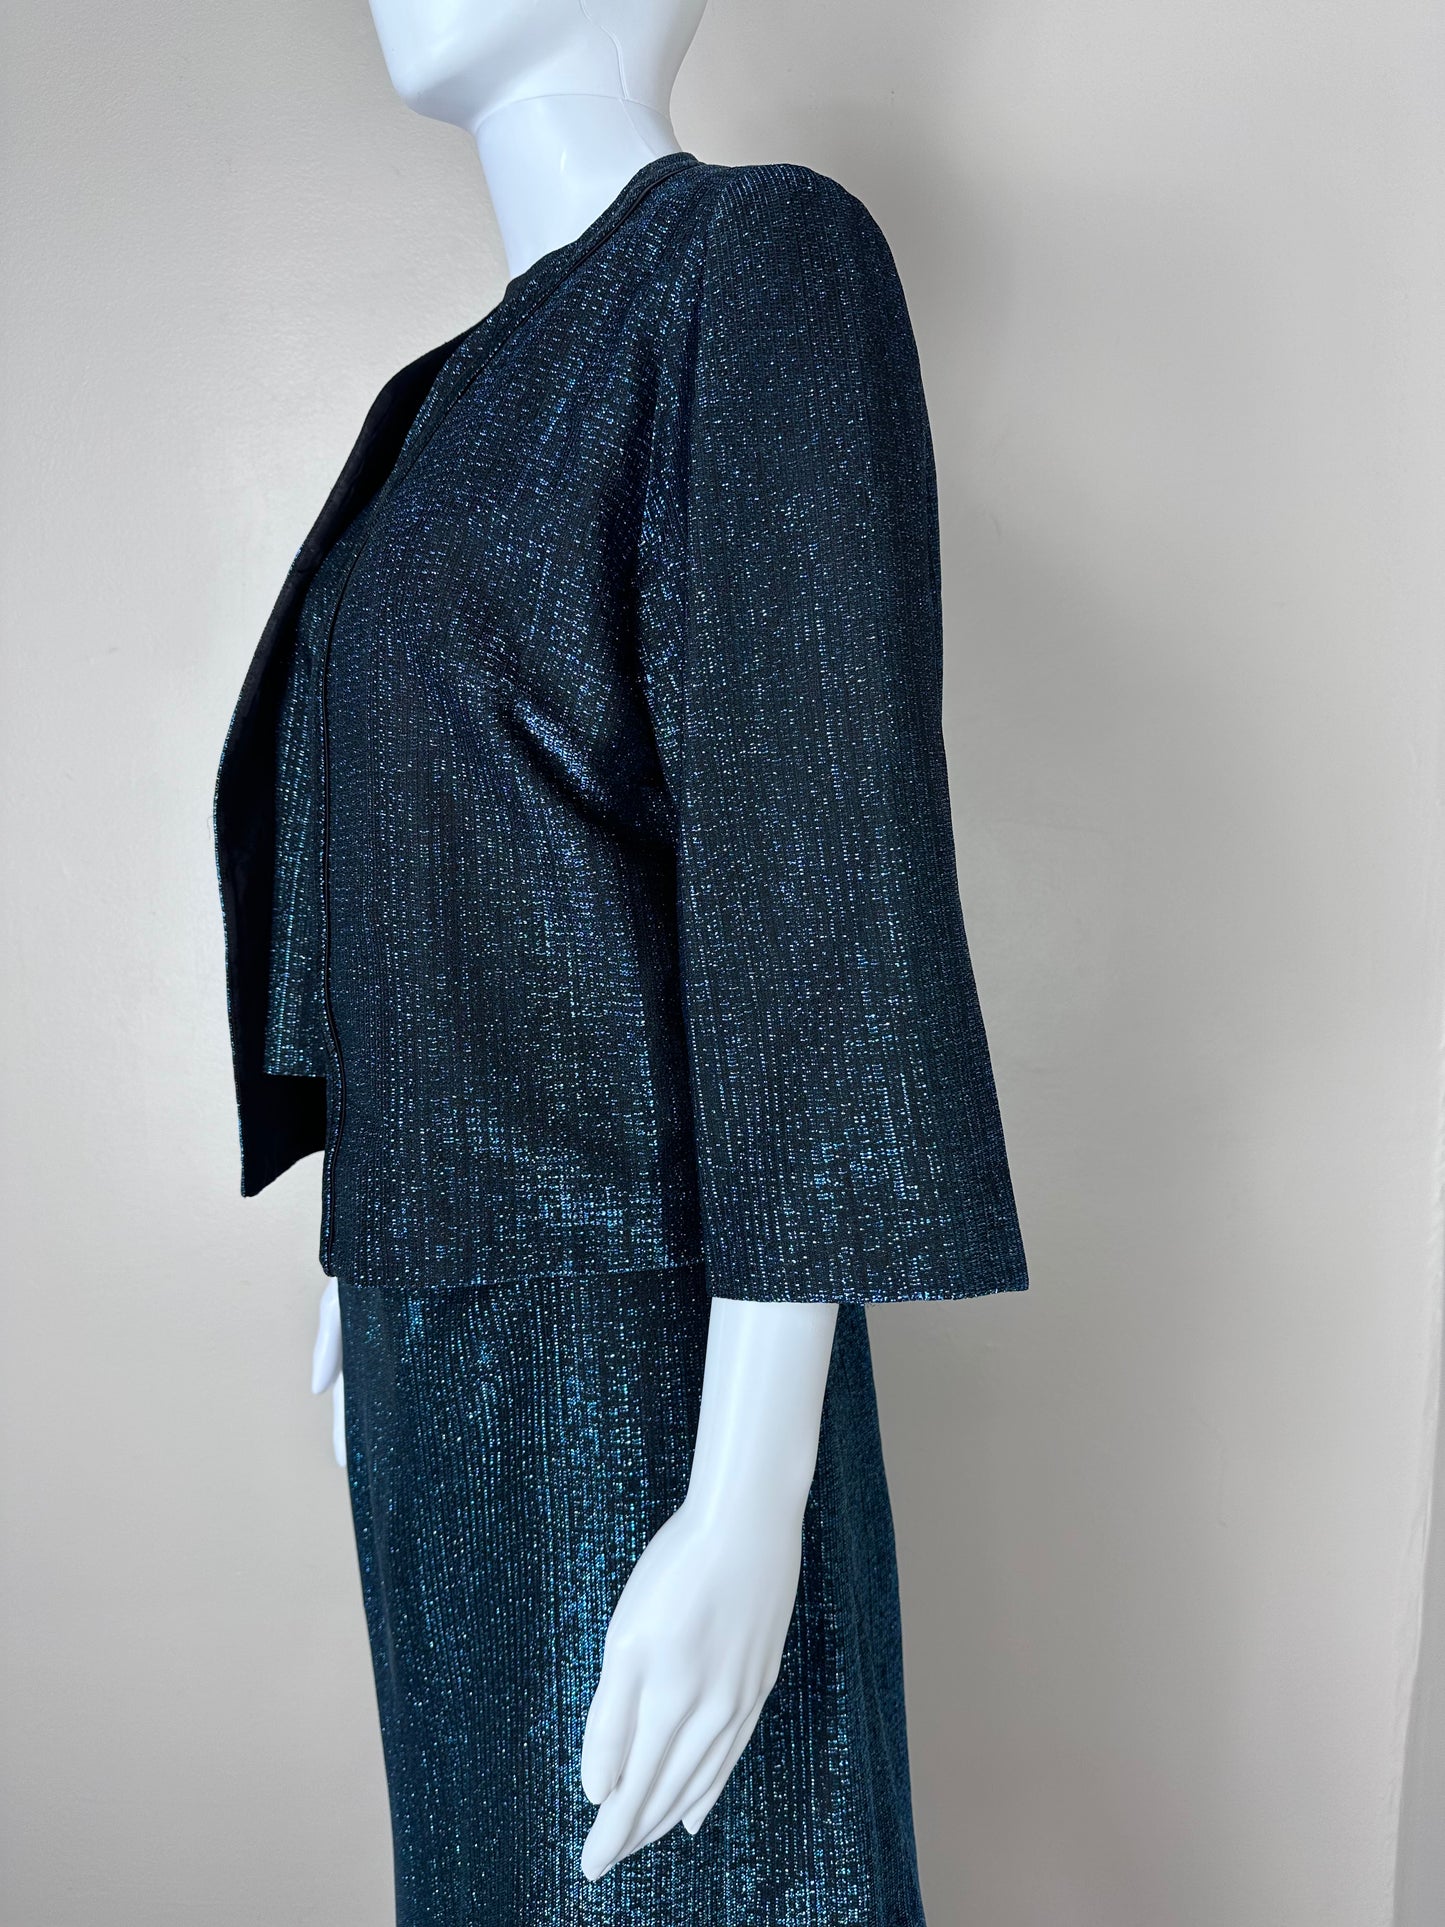 1960s Blue Lurex Suit, Size Medium-Large, 3 Piece Set, Top, Skirt, Jacket